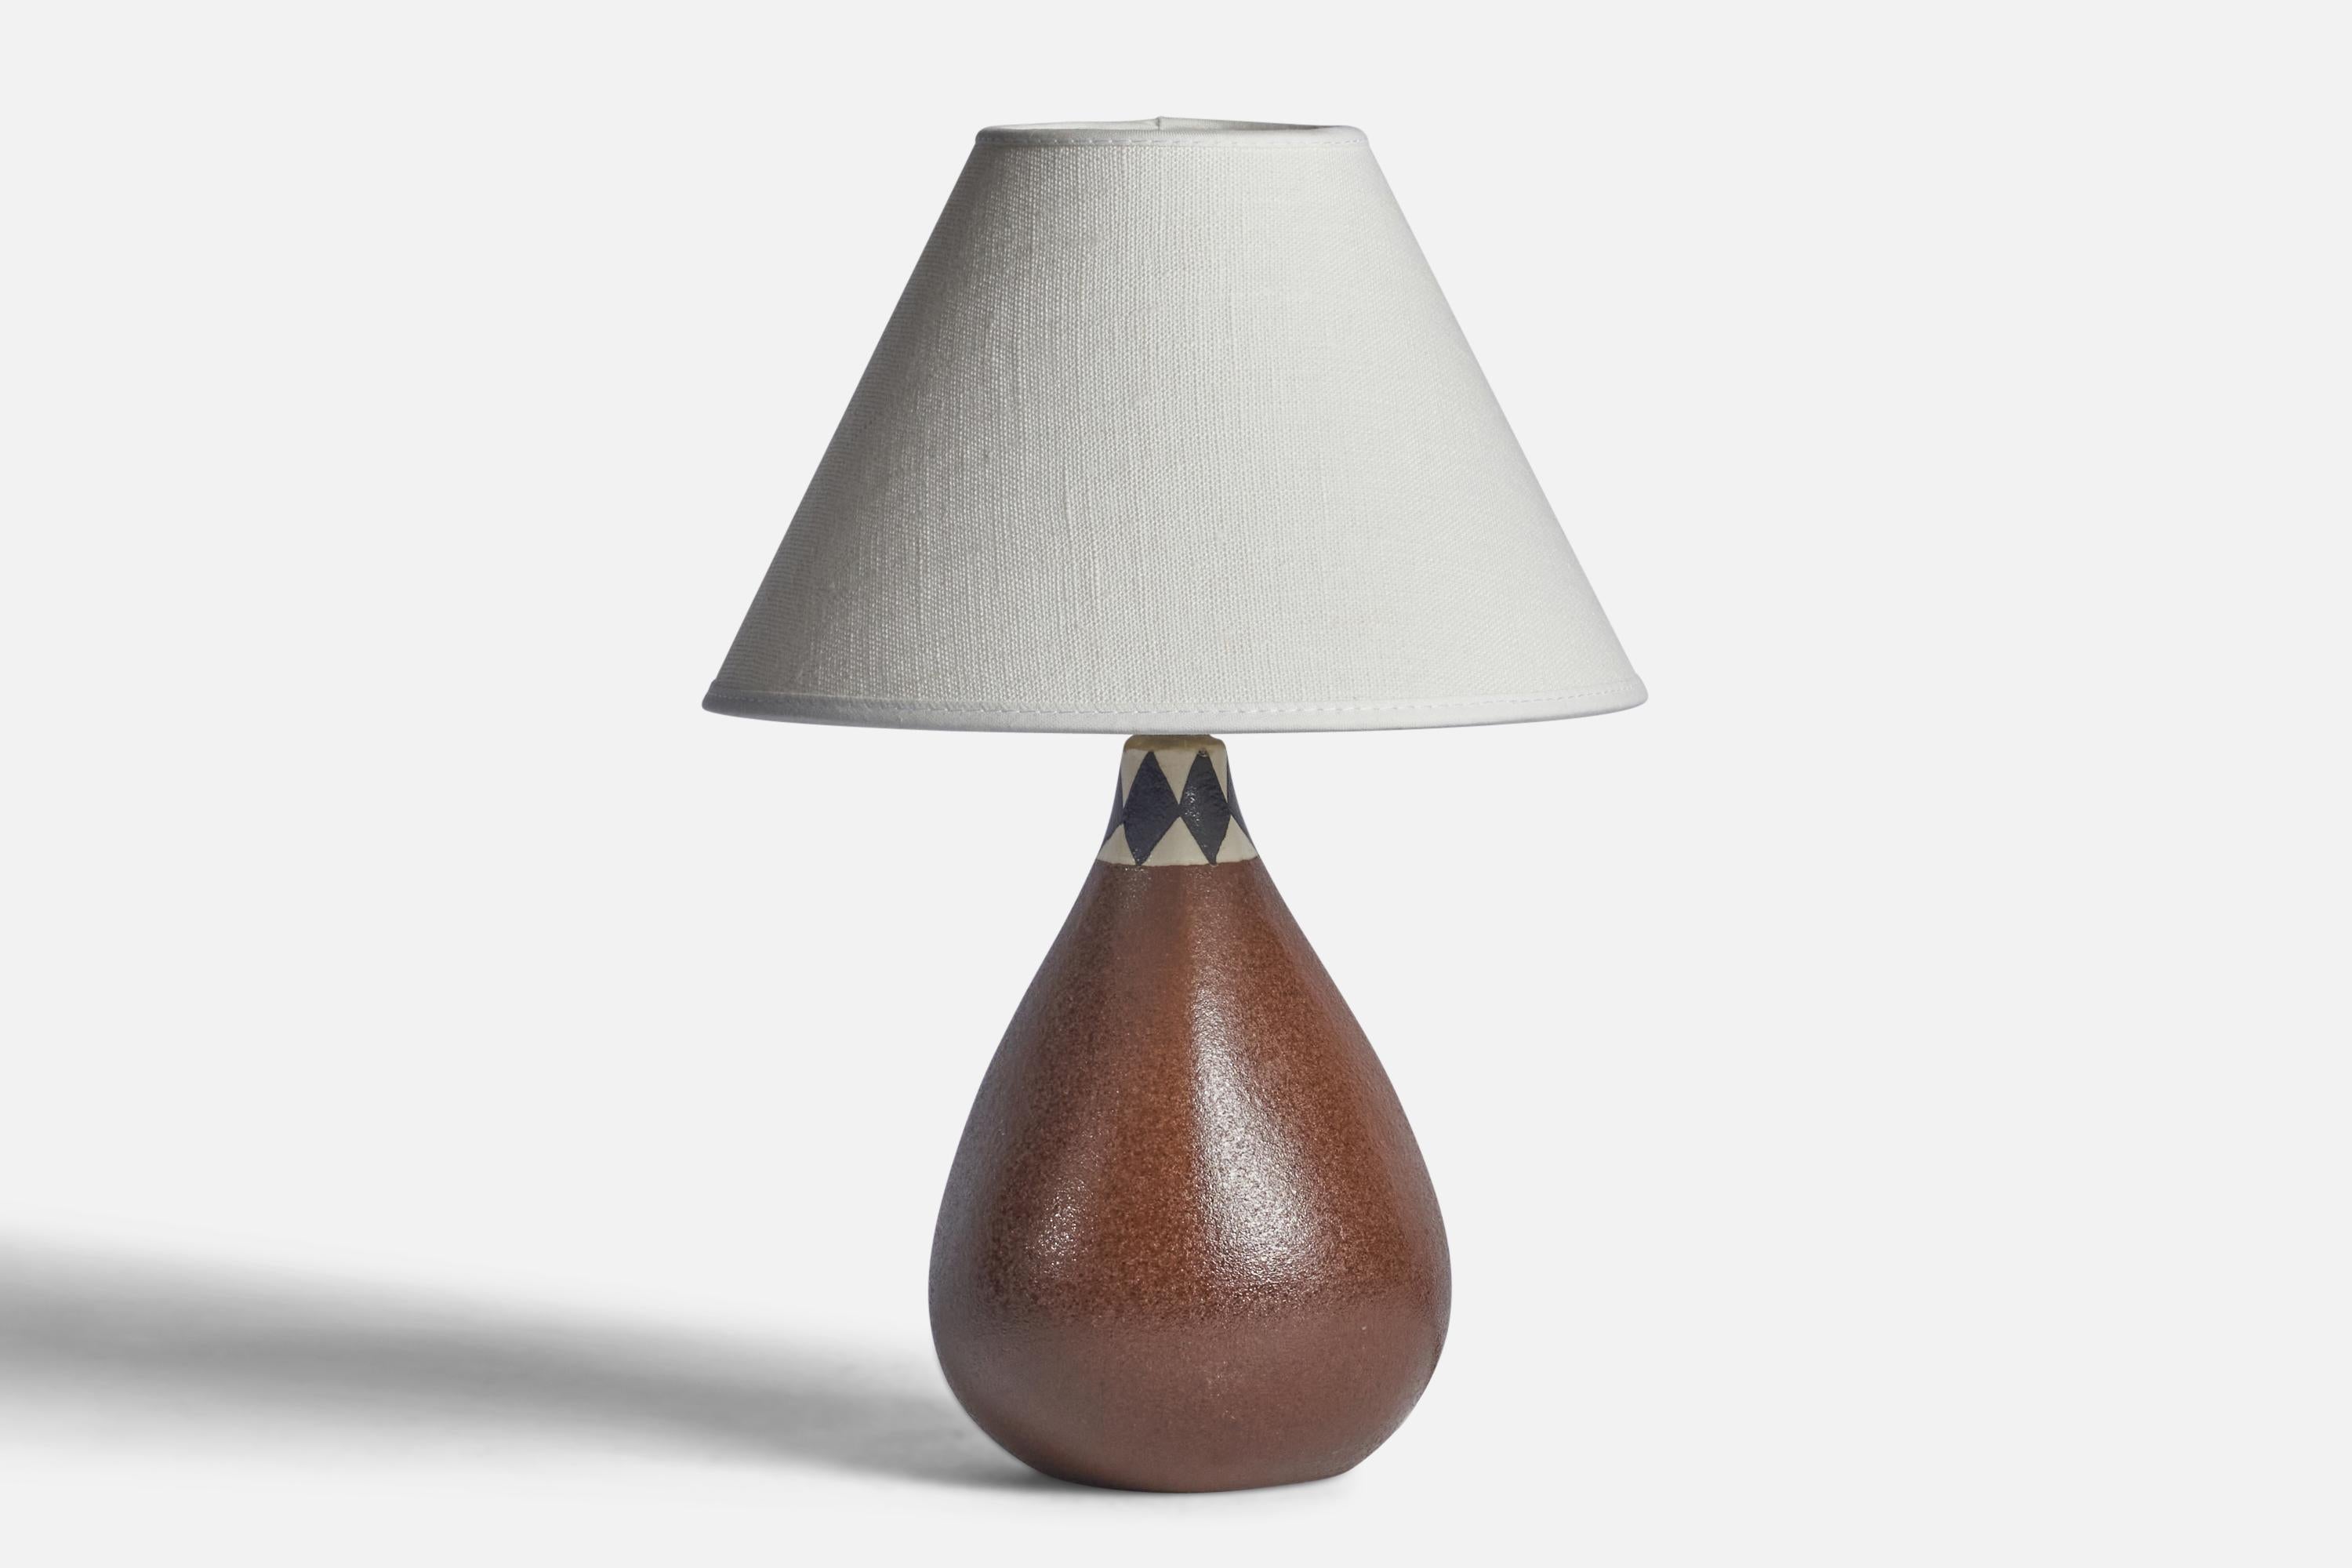 Tischlampe aus braunem, weißem und schwarz glasiertem Steingut, entworfen und hergestellt in Schweden, 1960er Jahre.

Abmessungen der Lampe (Zoll): 8,75